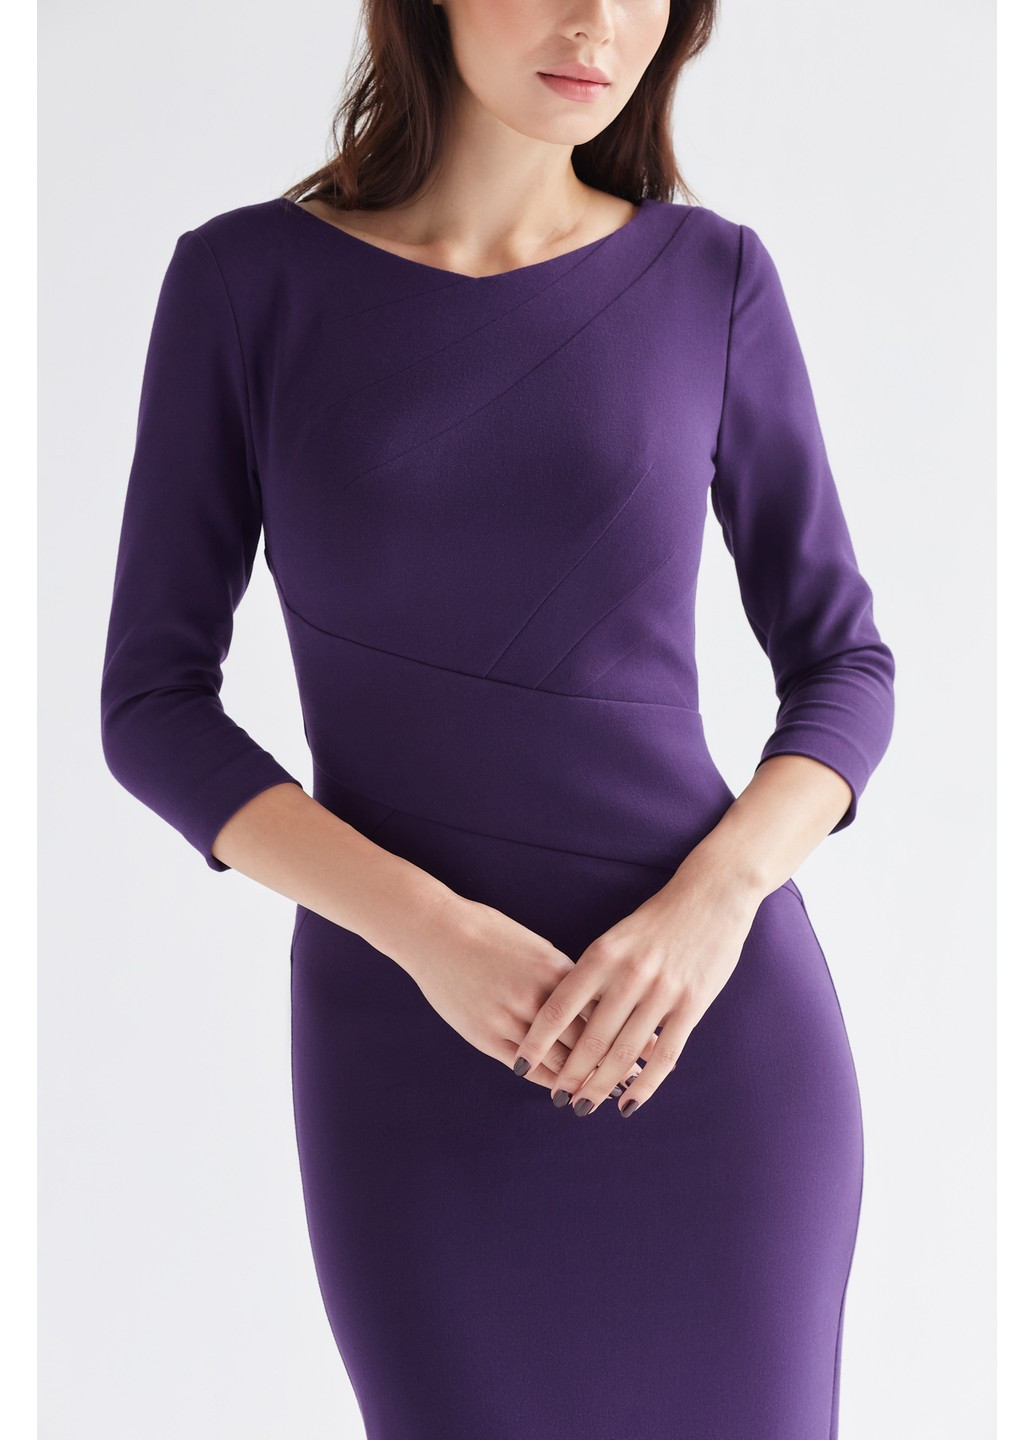 Фиолетовое деловое платье руби футляр BYURSE однотонное